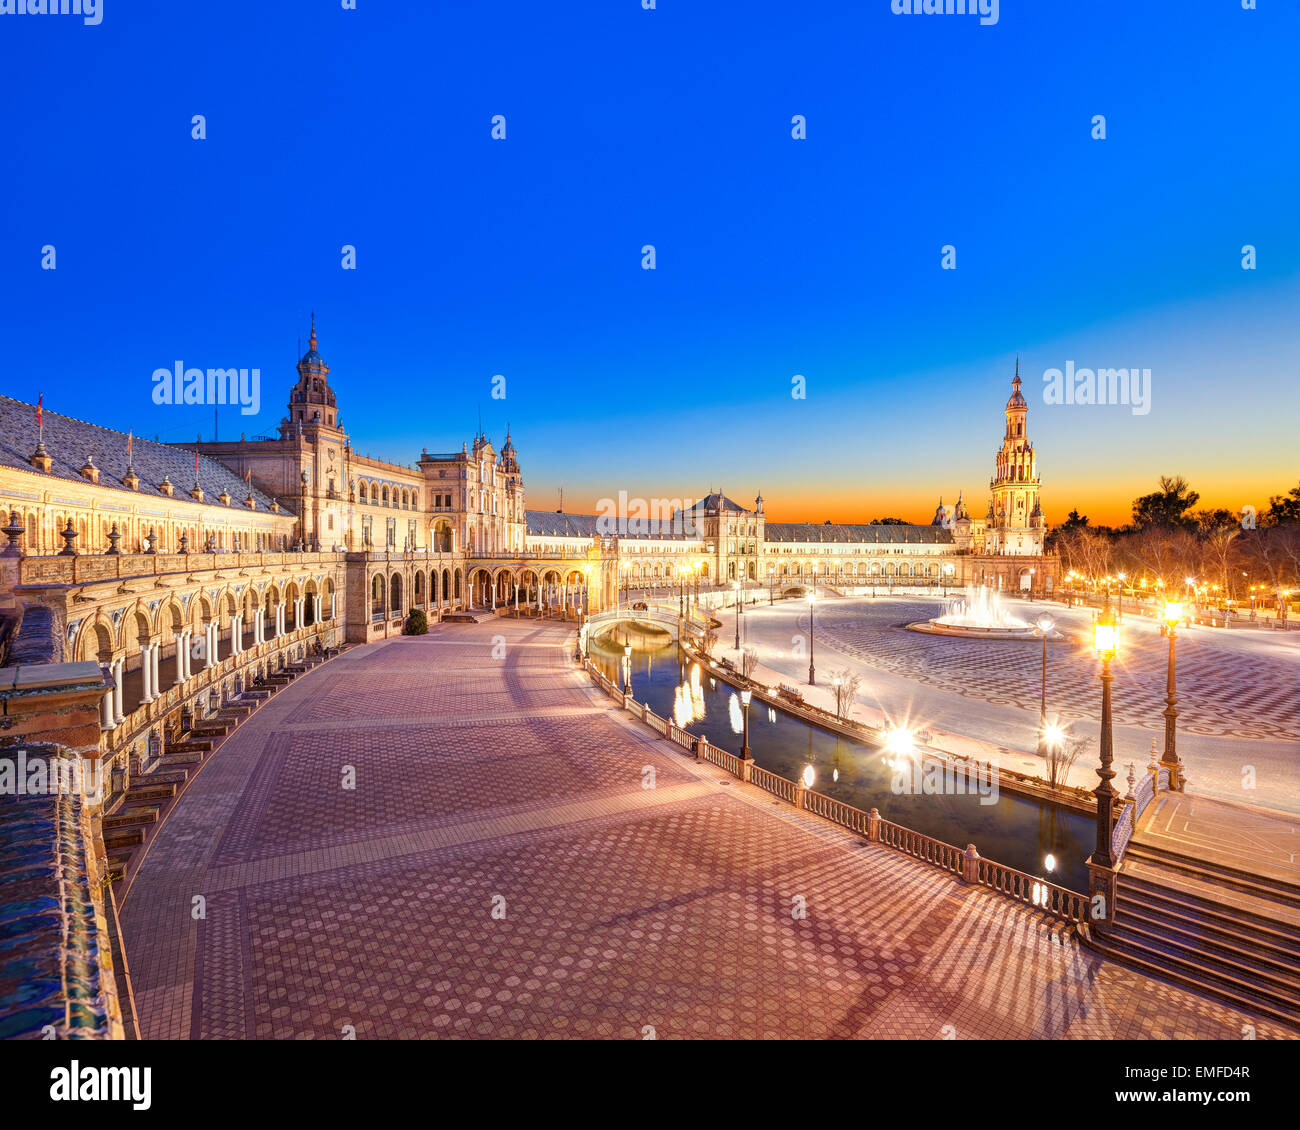 Plaza de España de Séville, Sevilla, Espagne au coucher du soleil. Aperçu de la place pittoresque vers tour sud du bâtiment principal. Banque D'Images